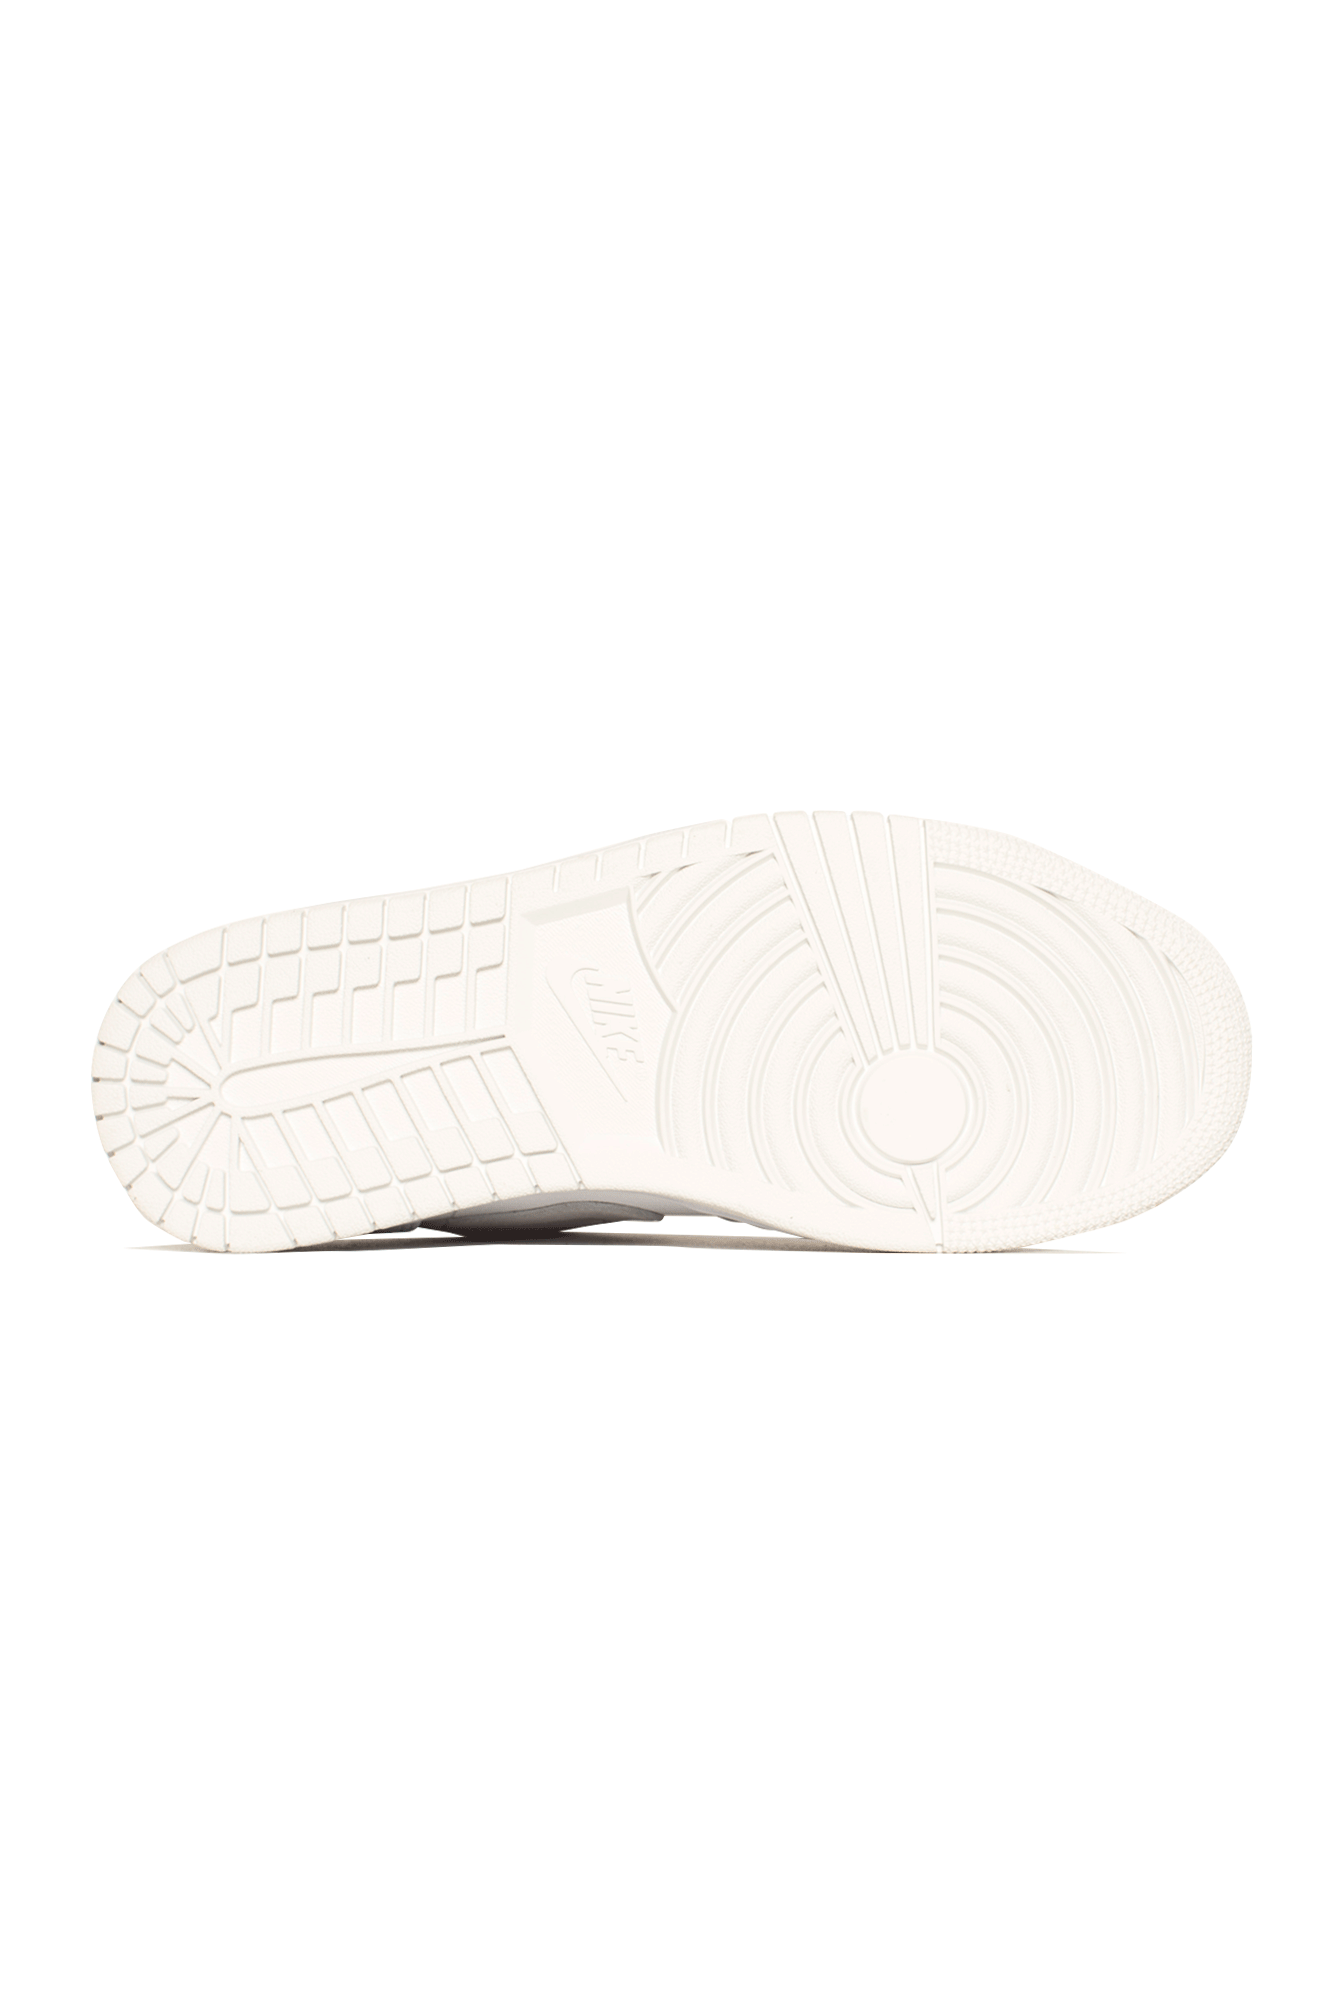 Jordan Brand Sneakers 1 Low "Paris" Bianco CV3043-#000#100#4 - One Block Down